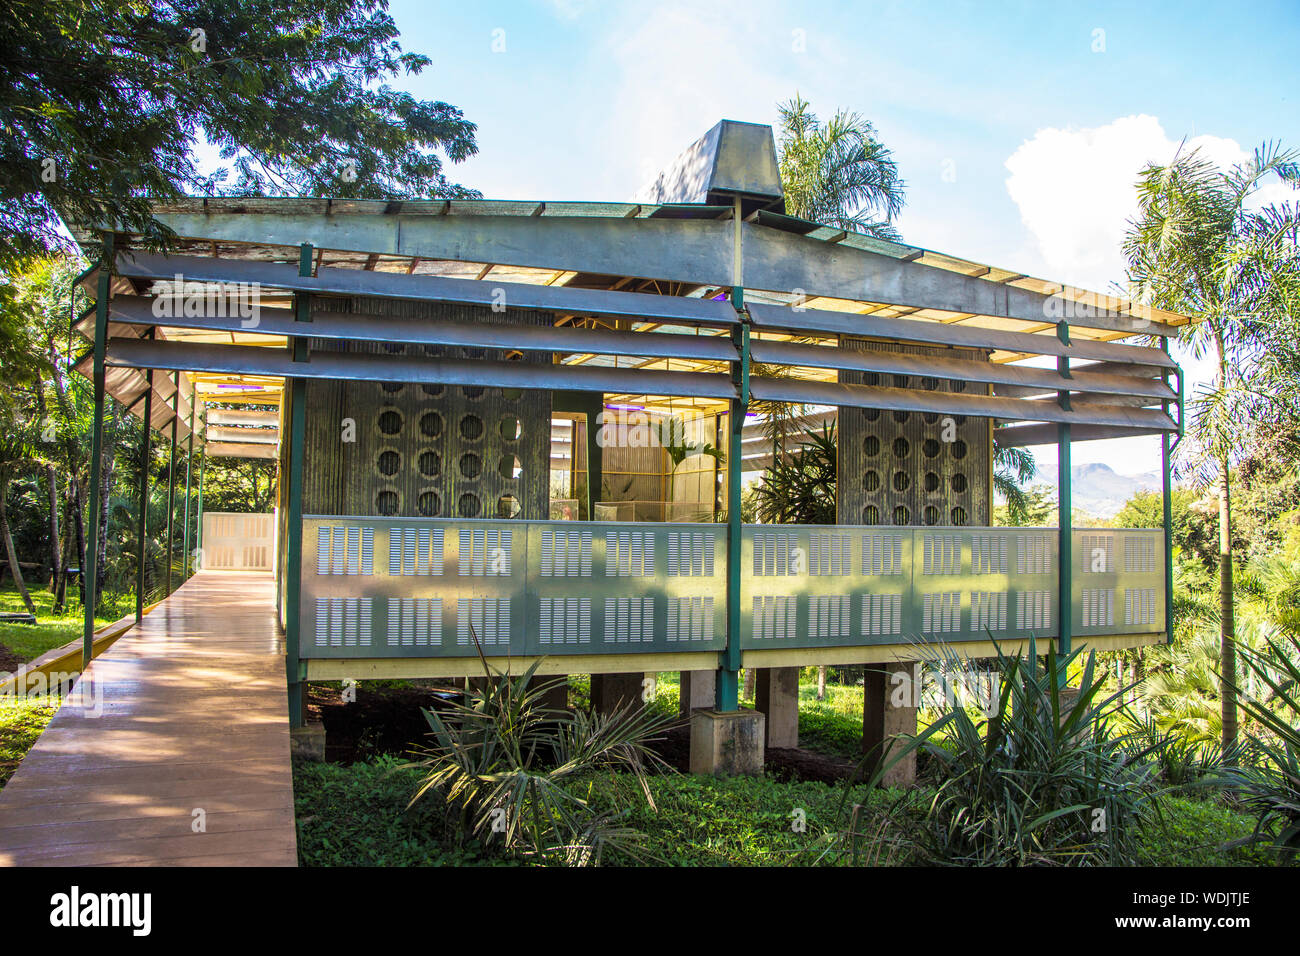 Pavillon Palm, Rirkrit Tiravanija, Inhotim, Institut d'Art Contemporain et le jardin botanique, Brumadinho, Minas Gerais, Brésil Banque D'Images